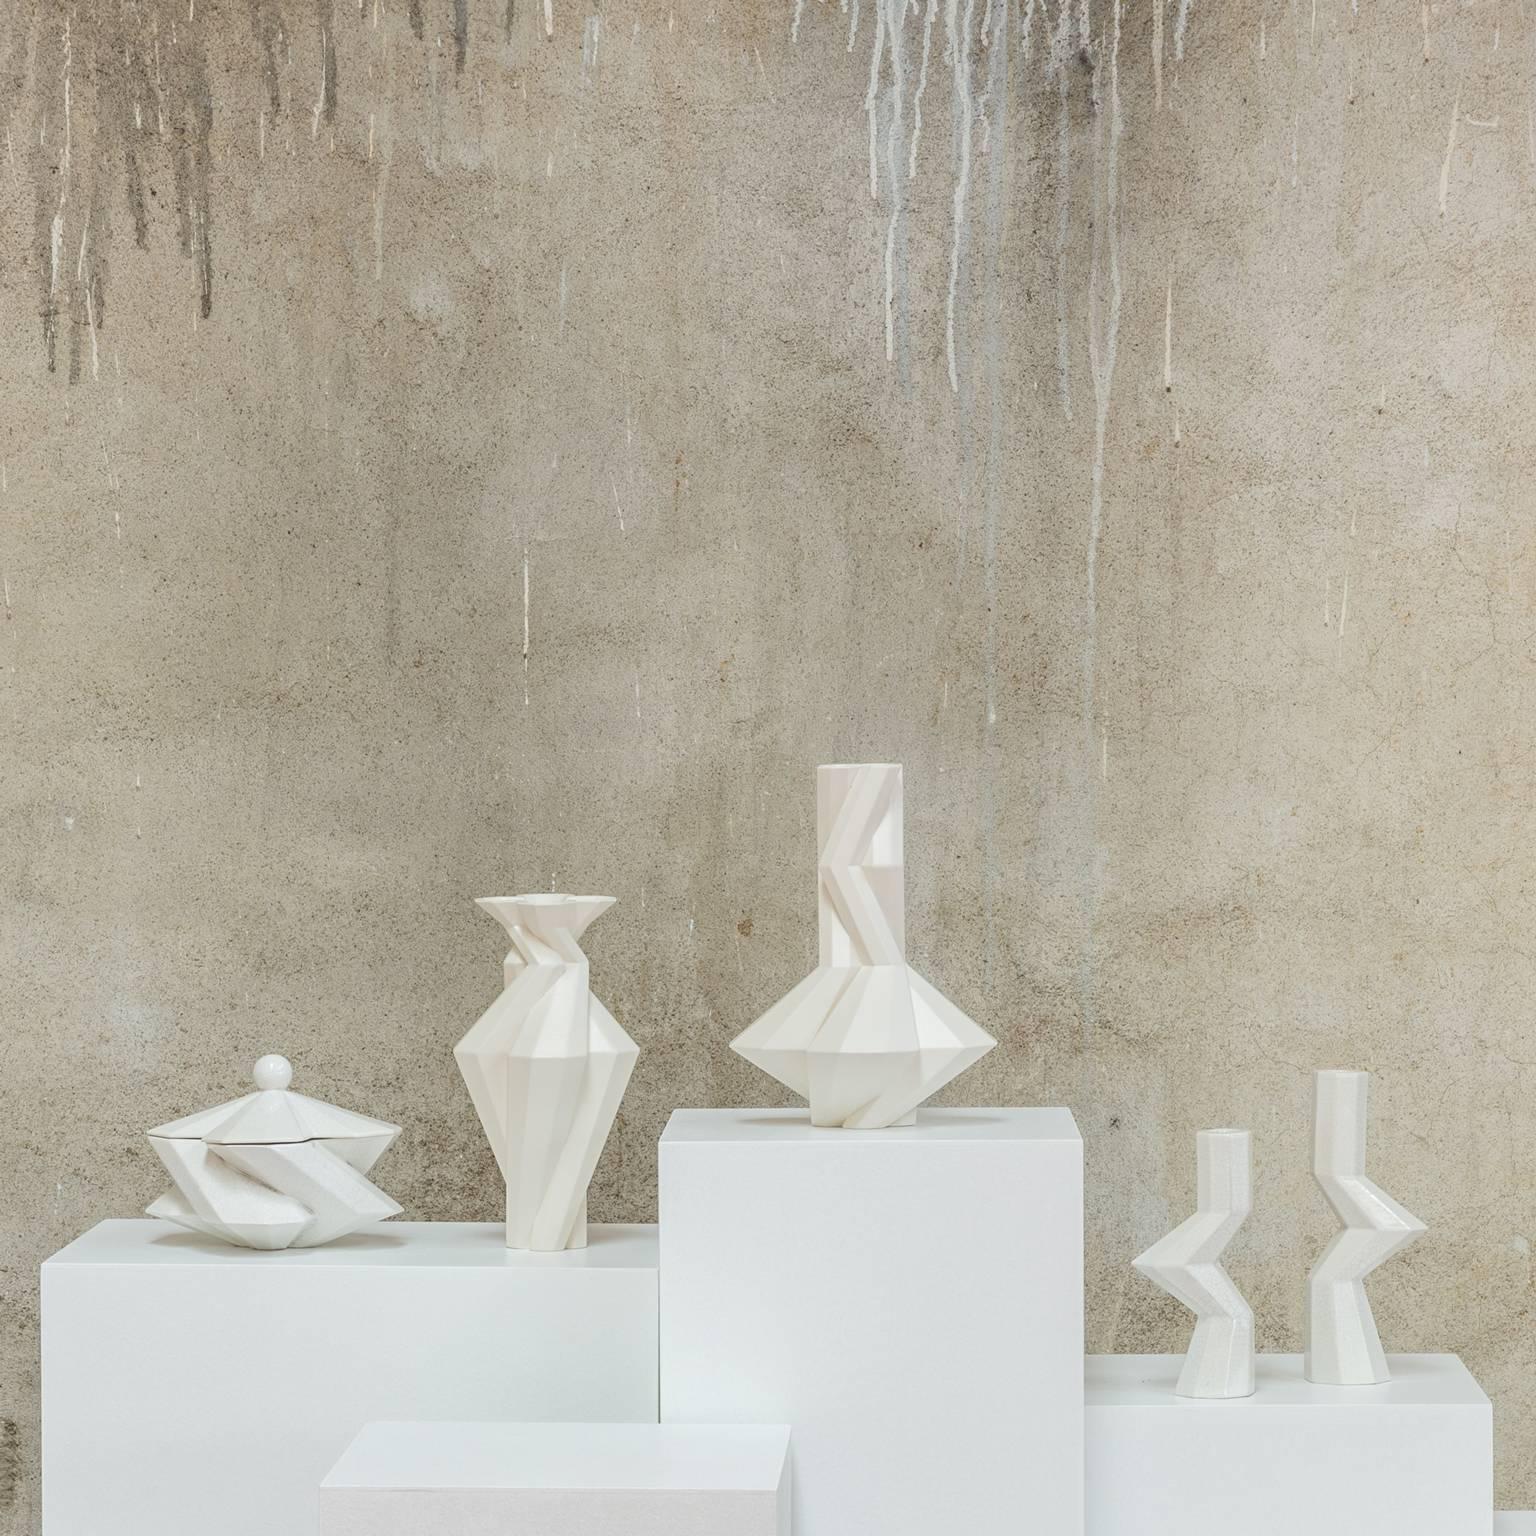 Cast Fortress Spire Vase in White Ceramic by Lara Bohinc, In Stock